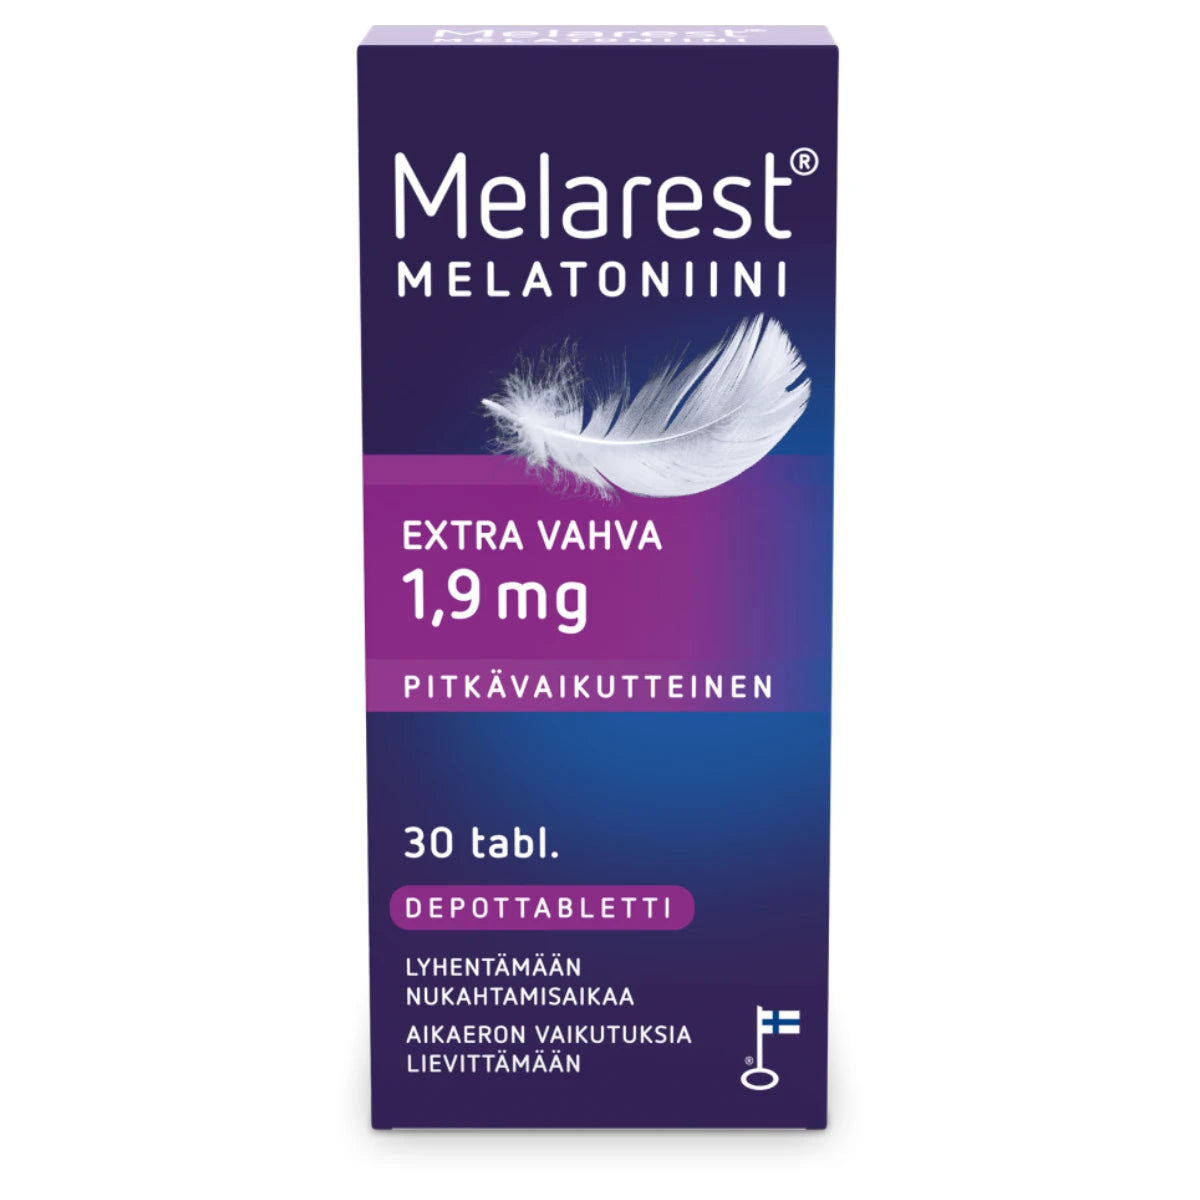 MELAREST Melatoniini Extra Vahva 1,9 mg pitkävaikutteinen tabletti 30 kpl